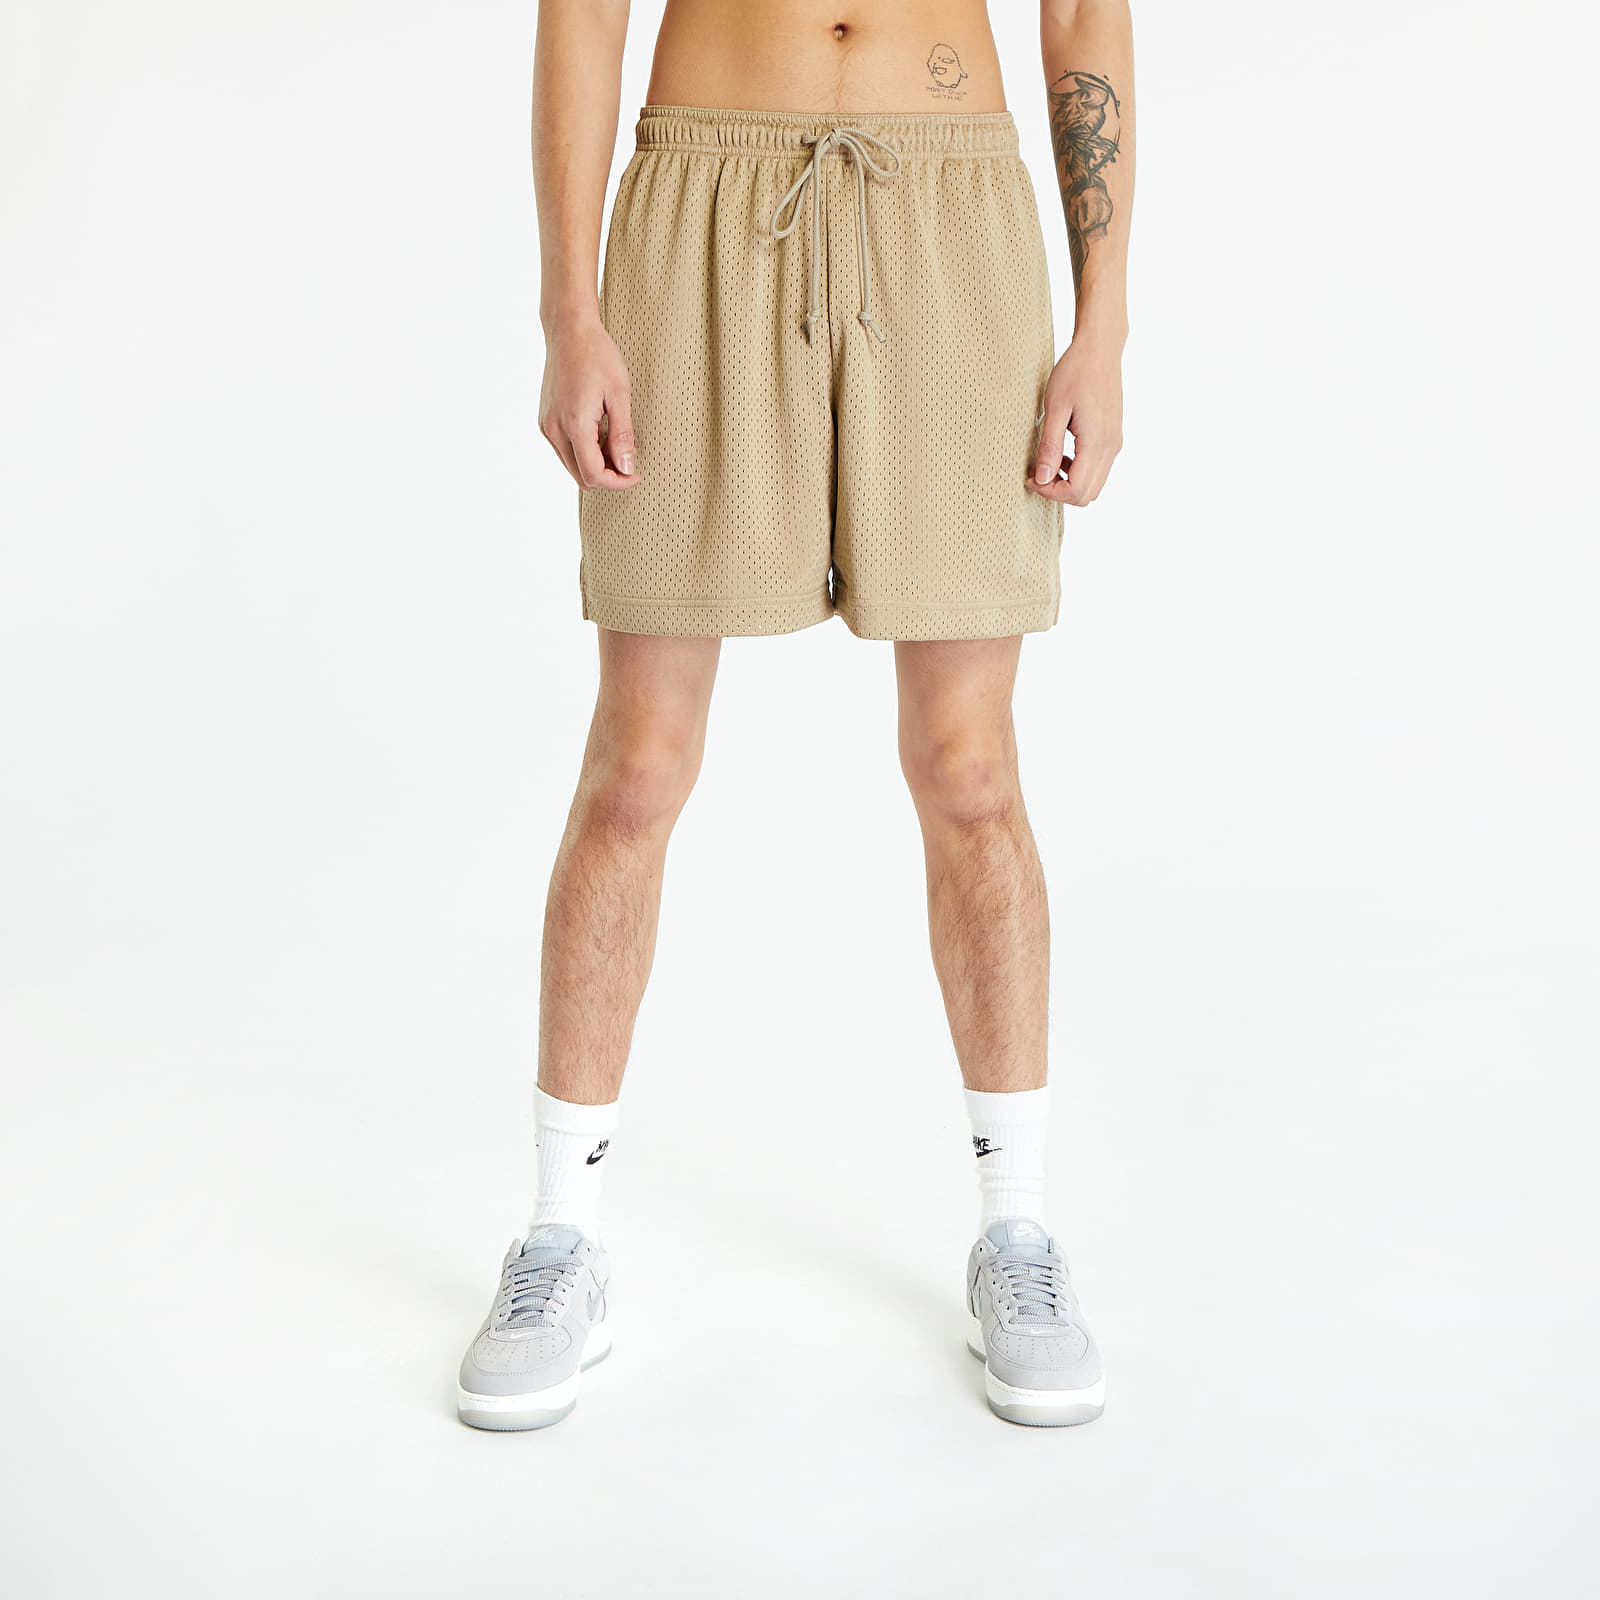 Kurze Hosen Nike Sportswear Authentics Men's Mesh Shorts Khaki/ White